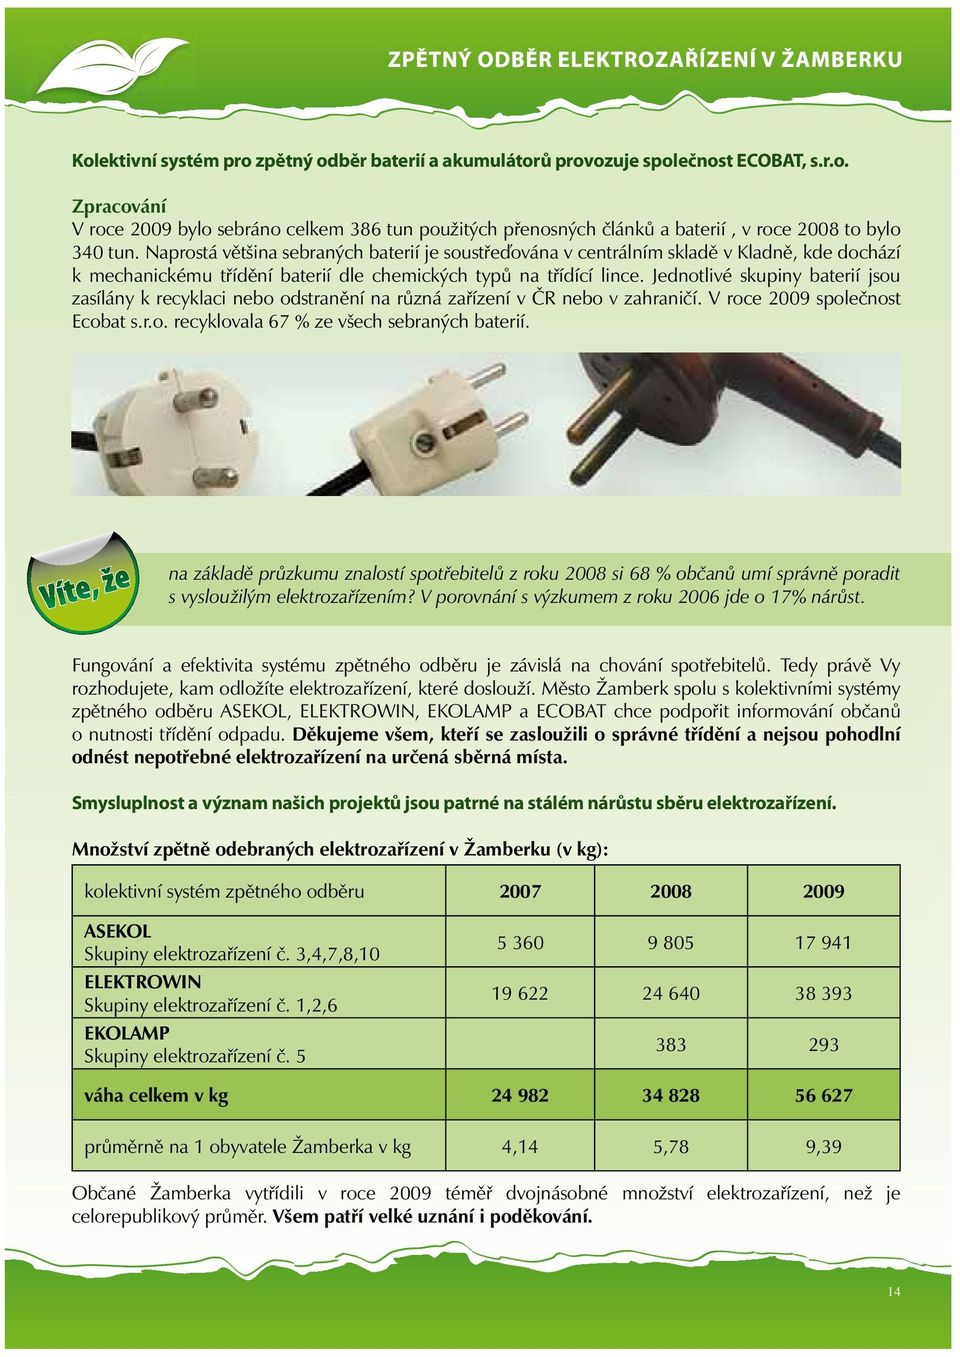 Jednotlivé skupiny baterií jsou zasílány k recyklaci nebo odstranění na různá zařízení v ČR nebo v zahraničí. V roce 2009 společnost Ecobat s.r.o. recyklovala 67 % ze všech sebraných baterií.